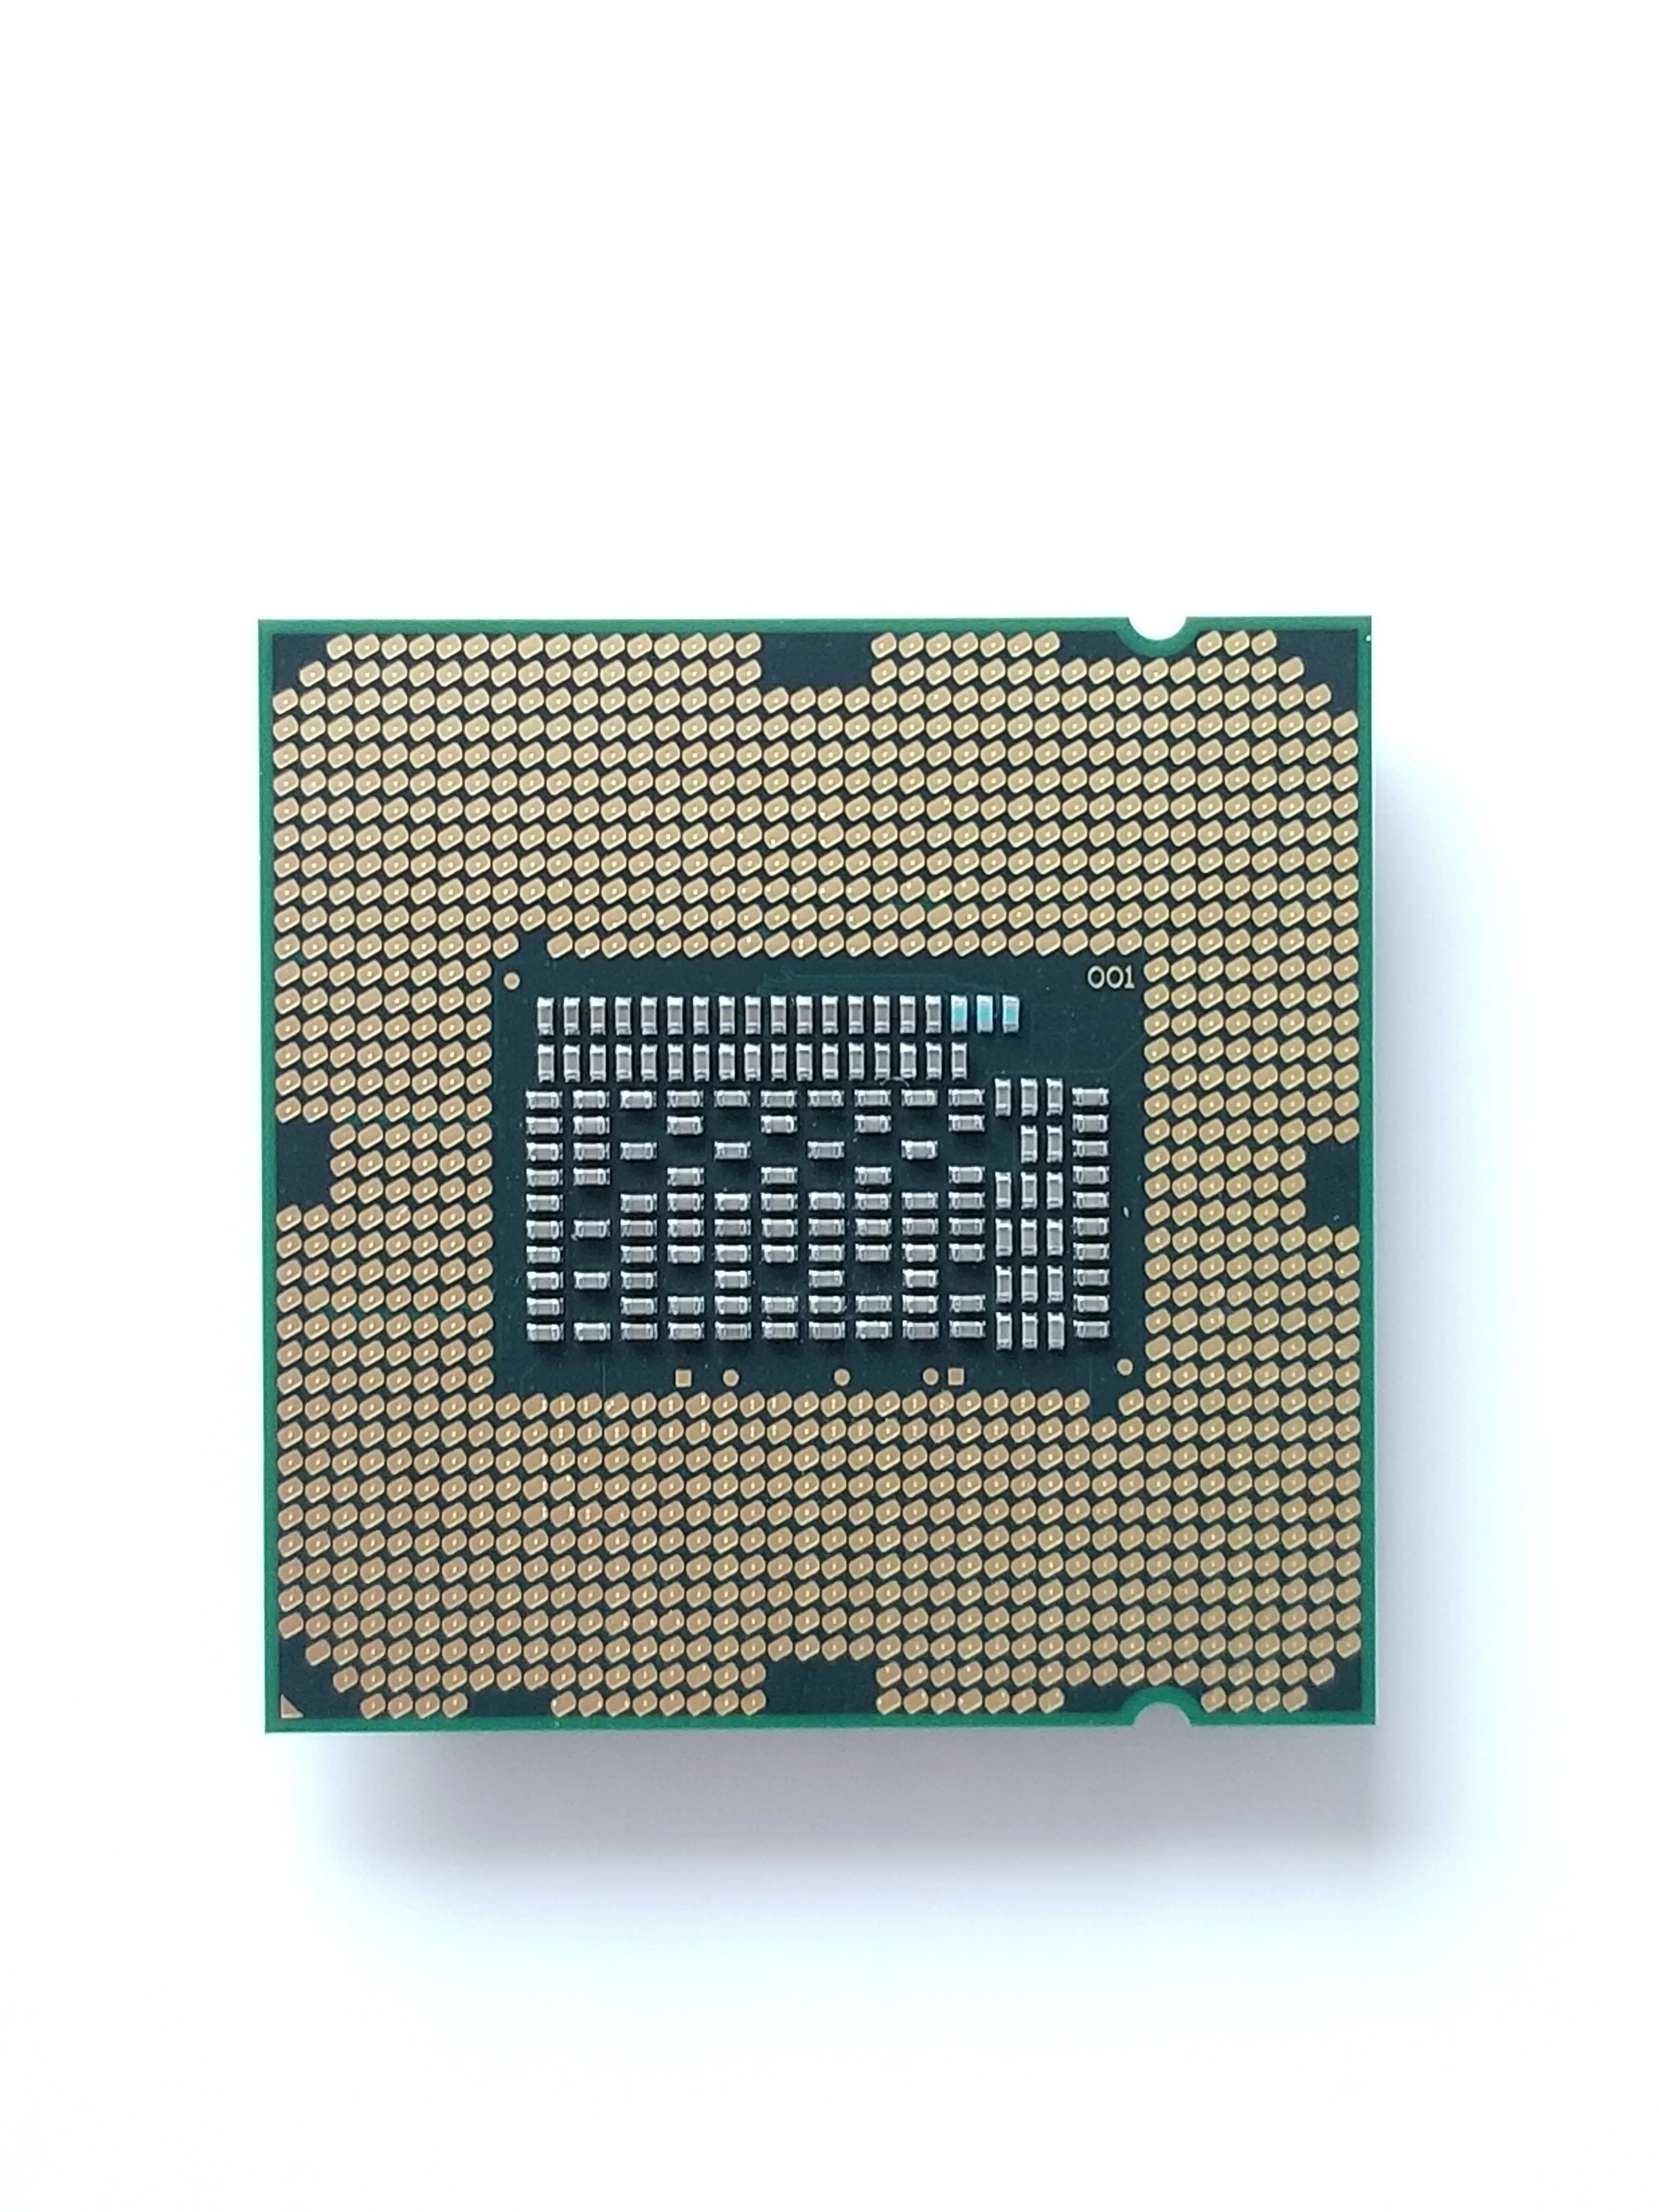 3220 сокет. Процессор Intel Core i3-3220. I3 3220 сокет. Интел коре й3 3220.